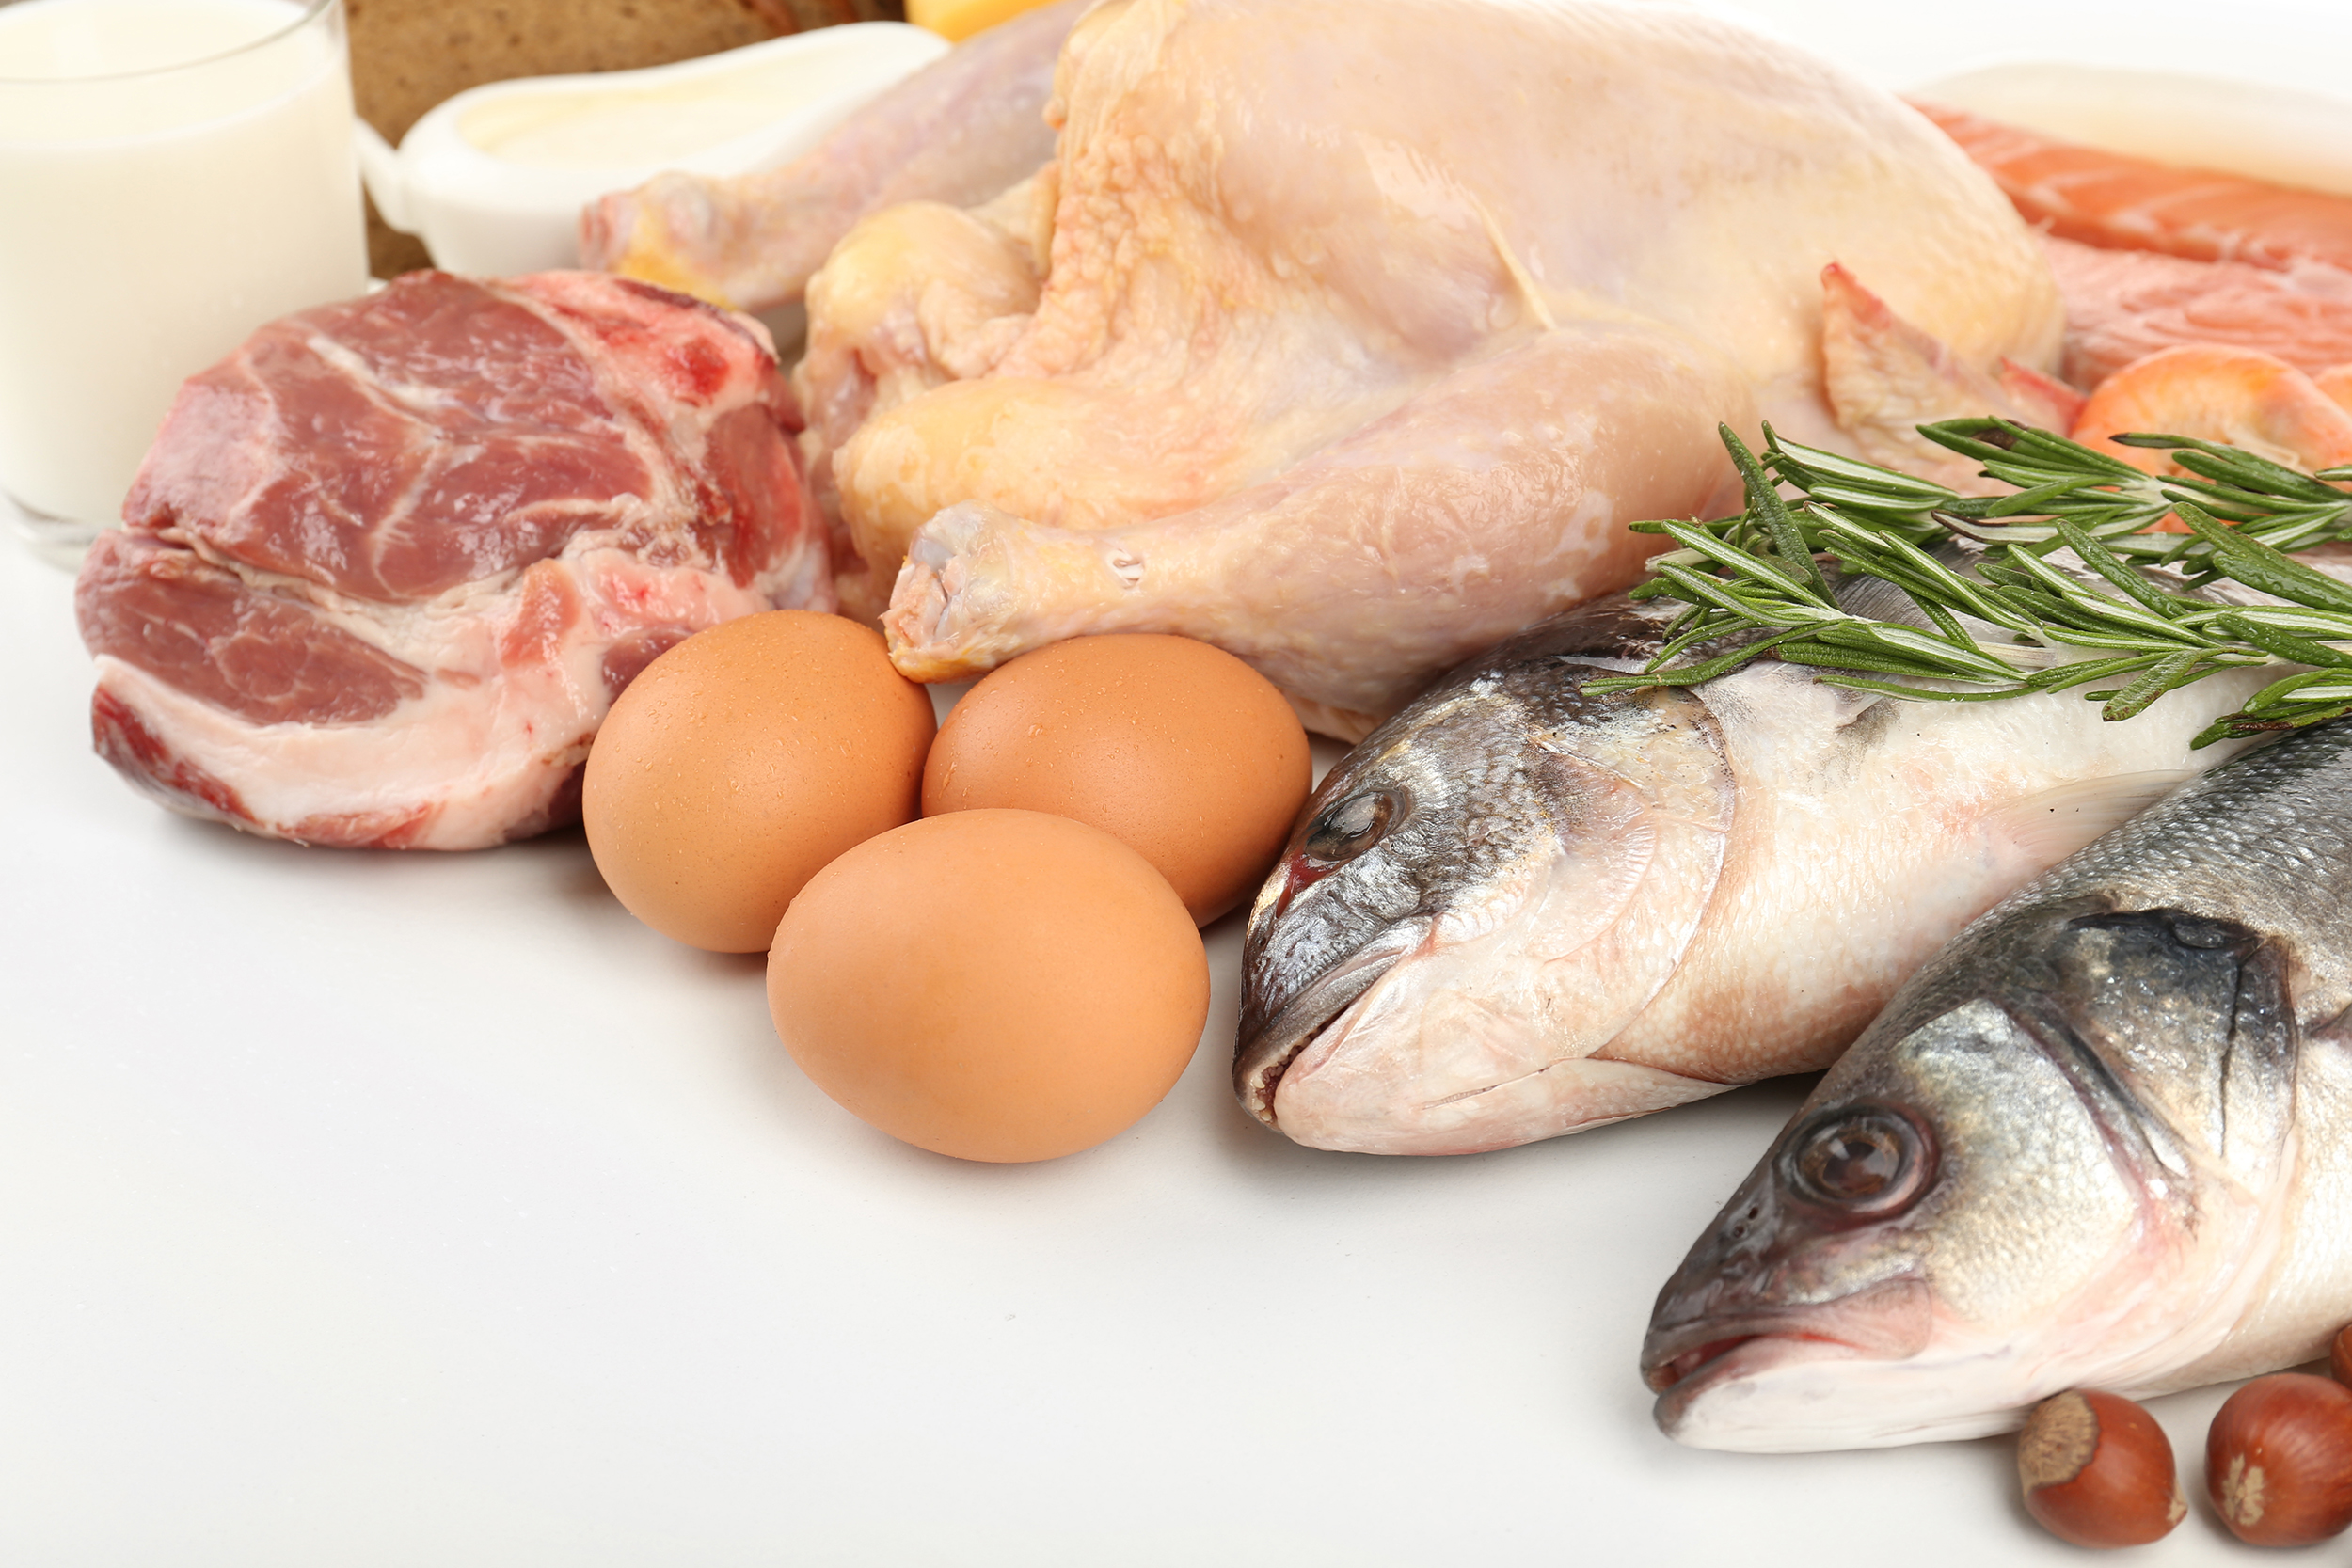 mangiare pollo o pesce, che è più sano